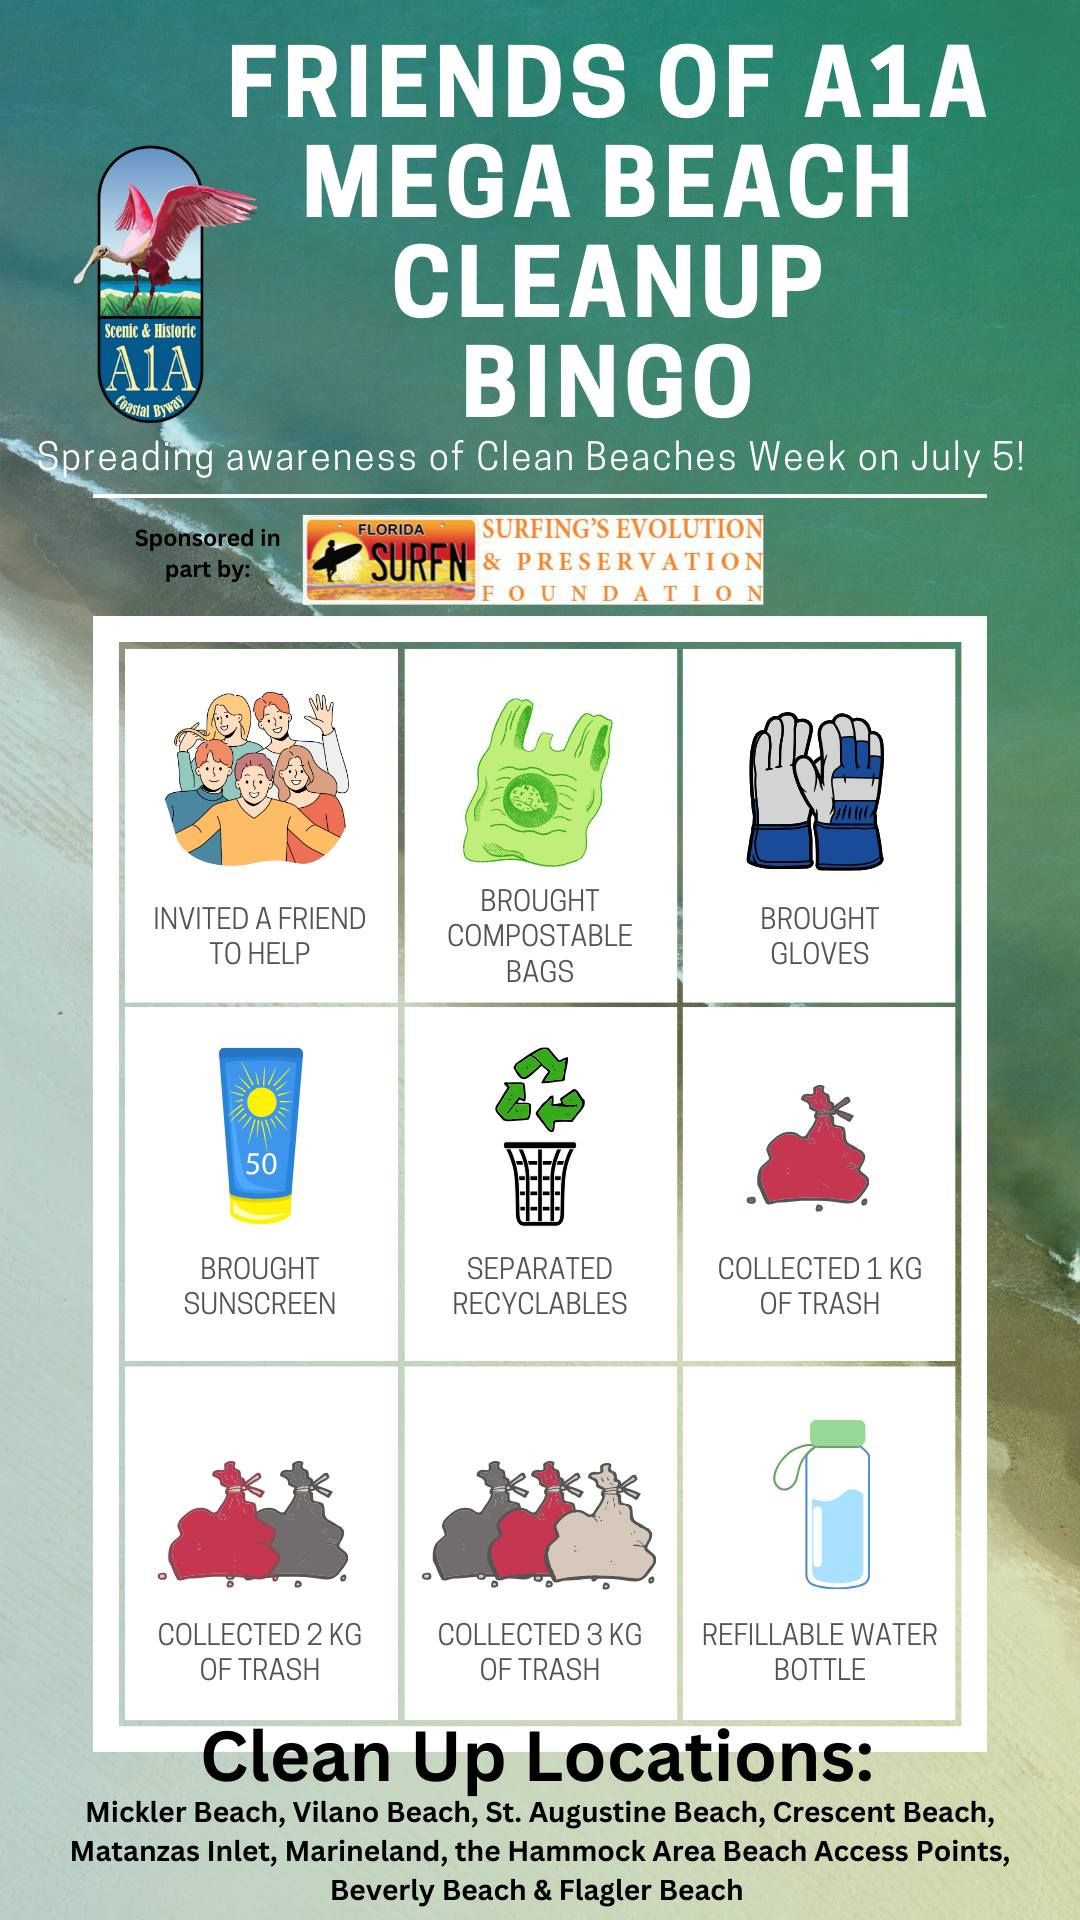 A1A Mega Beach Cleanup - Clean Beaches Week 